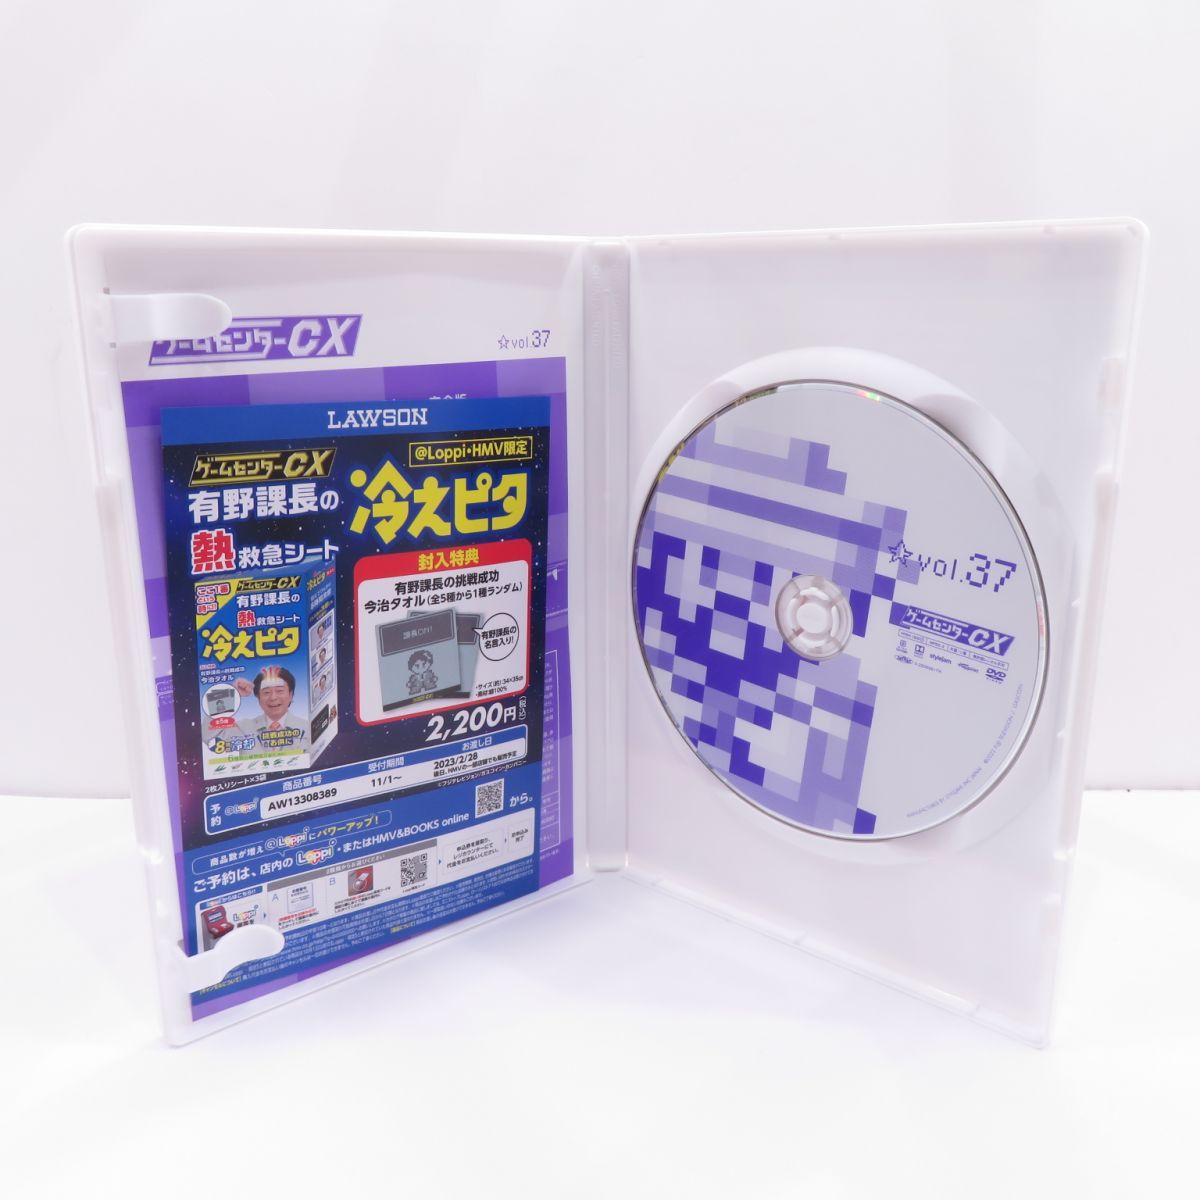 ゲームセンターCX DVD 37本セット - ブルーレイ